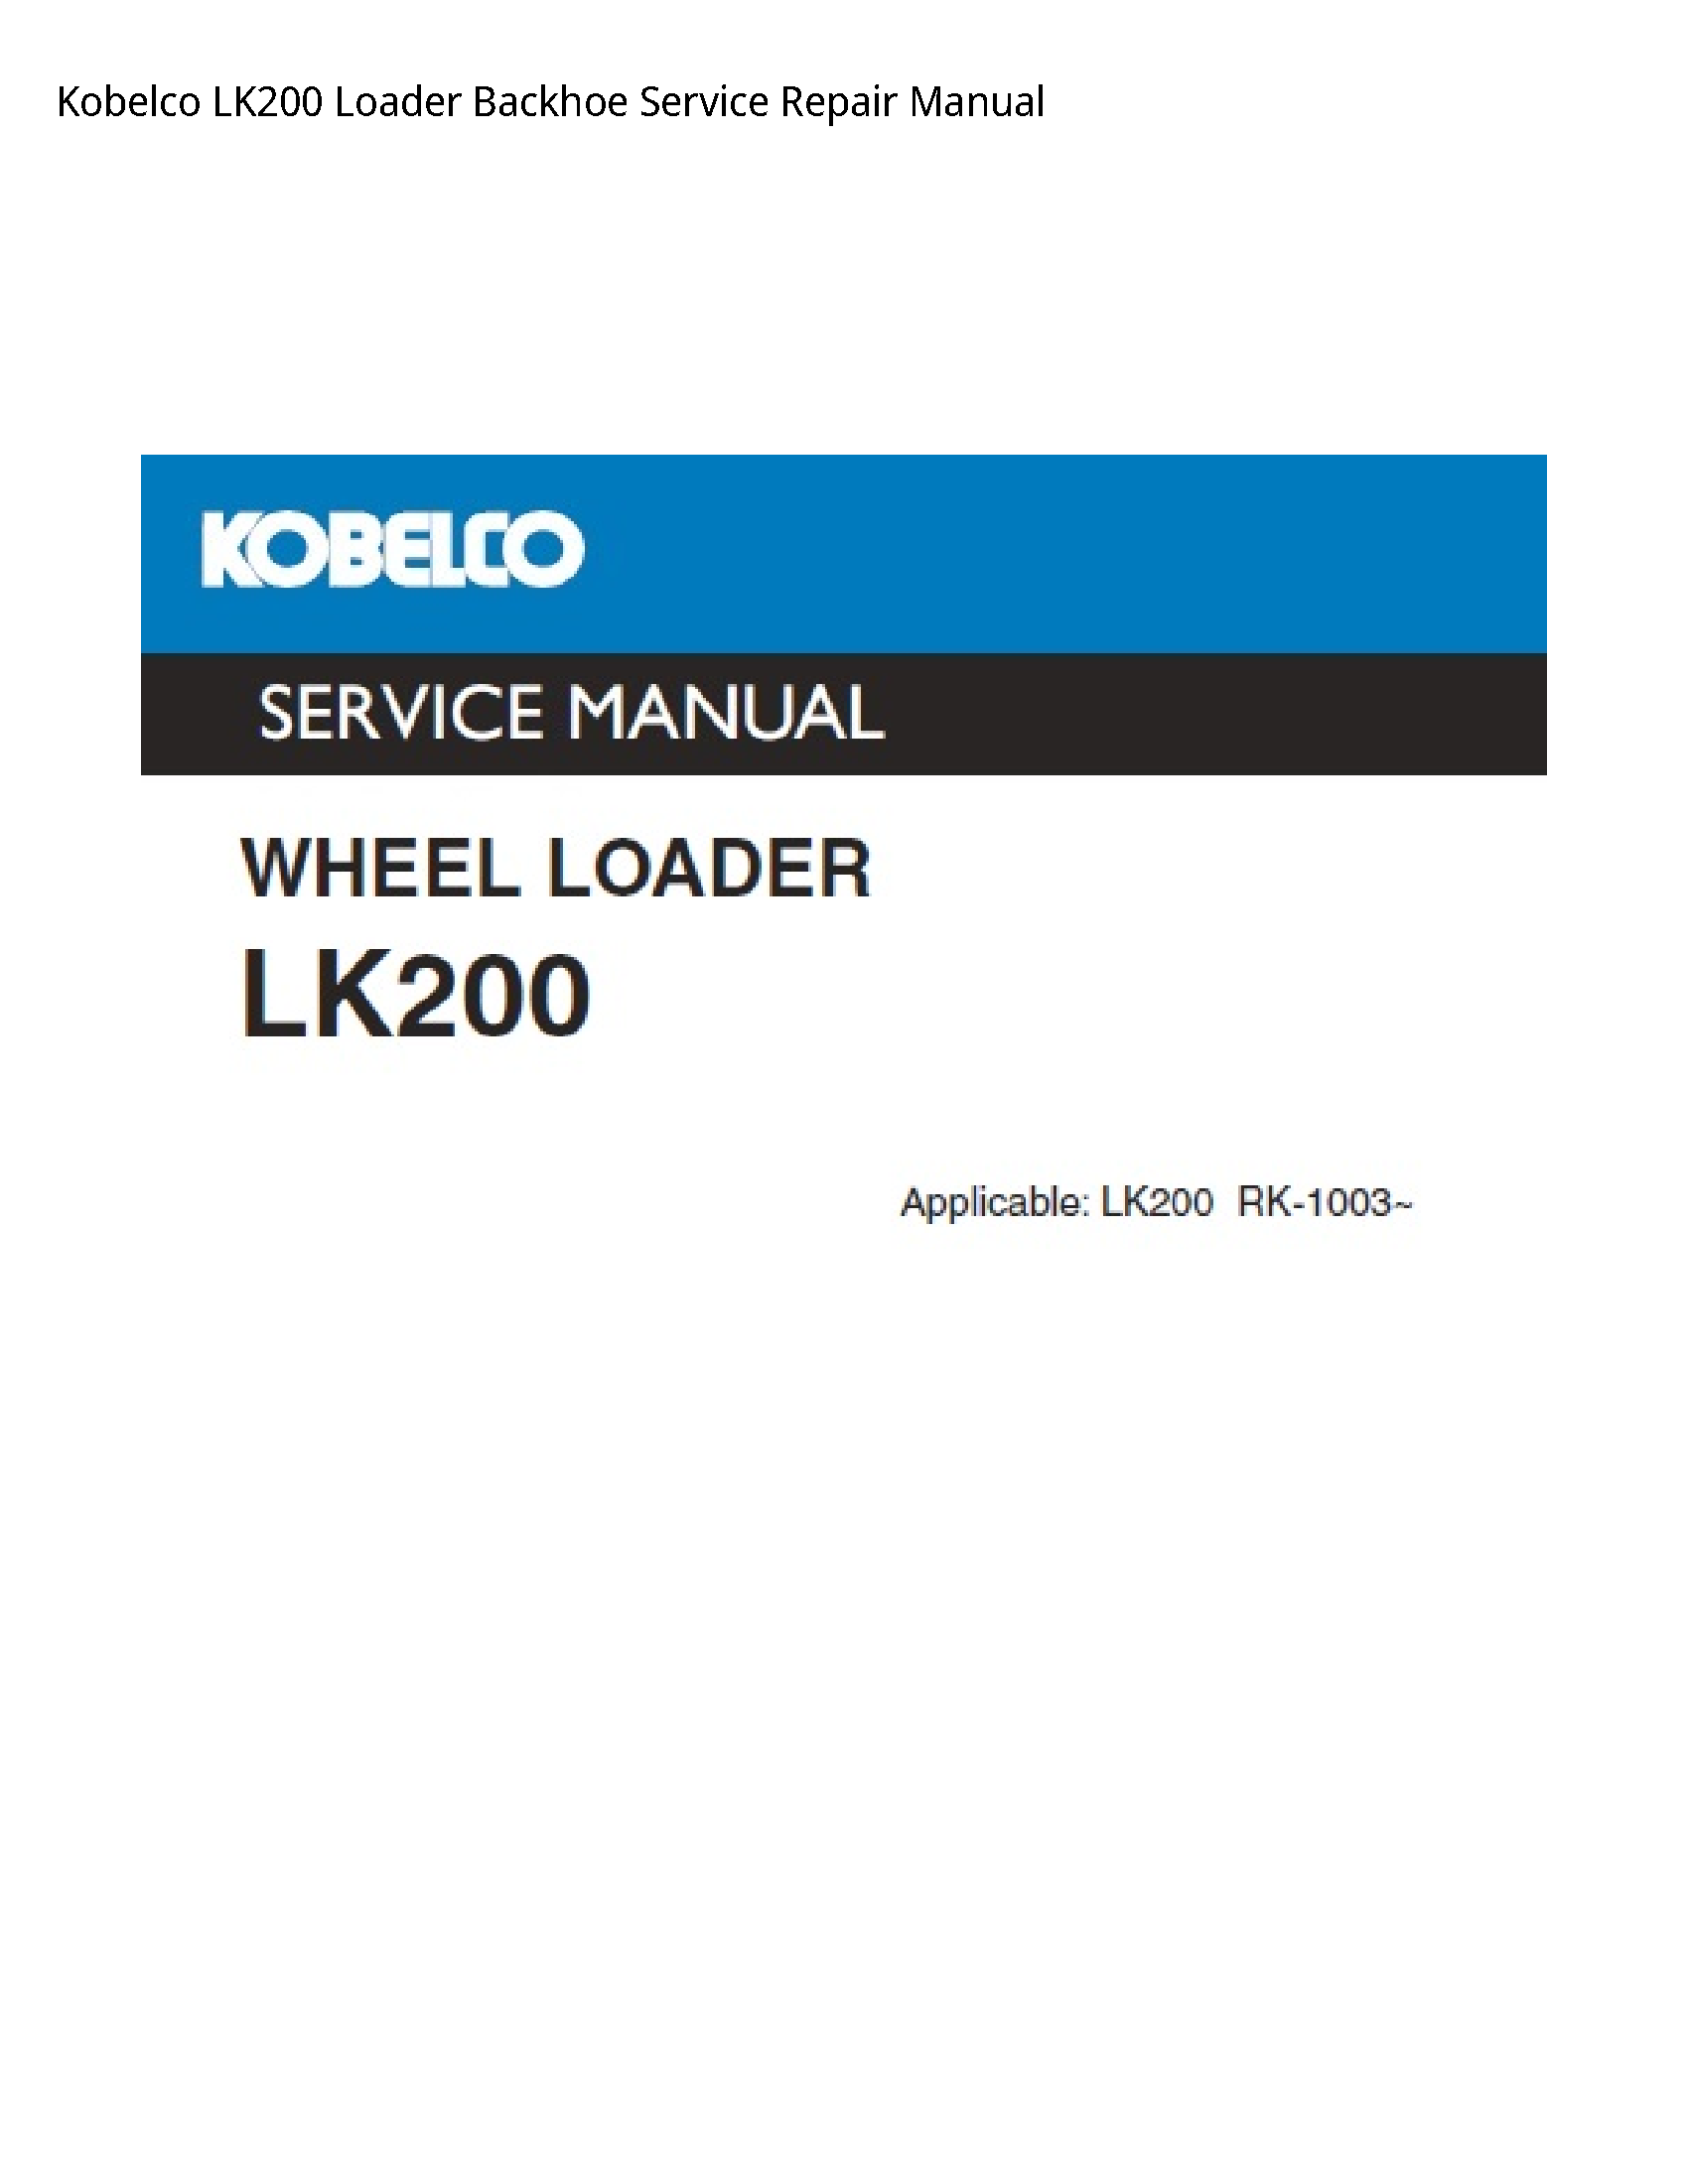 Kobelco LK200 Loader Backhoe manual